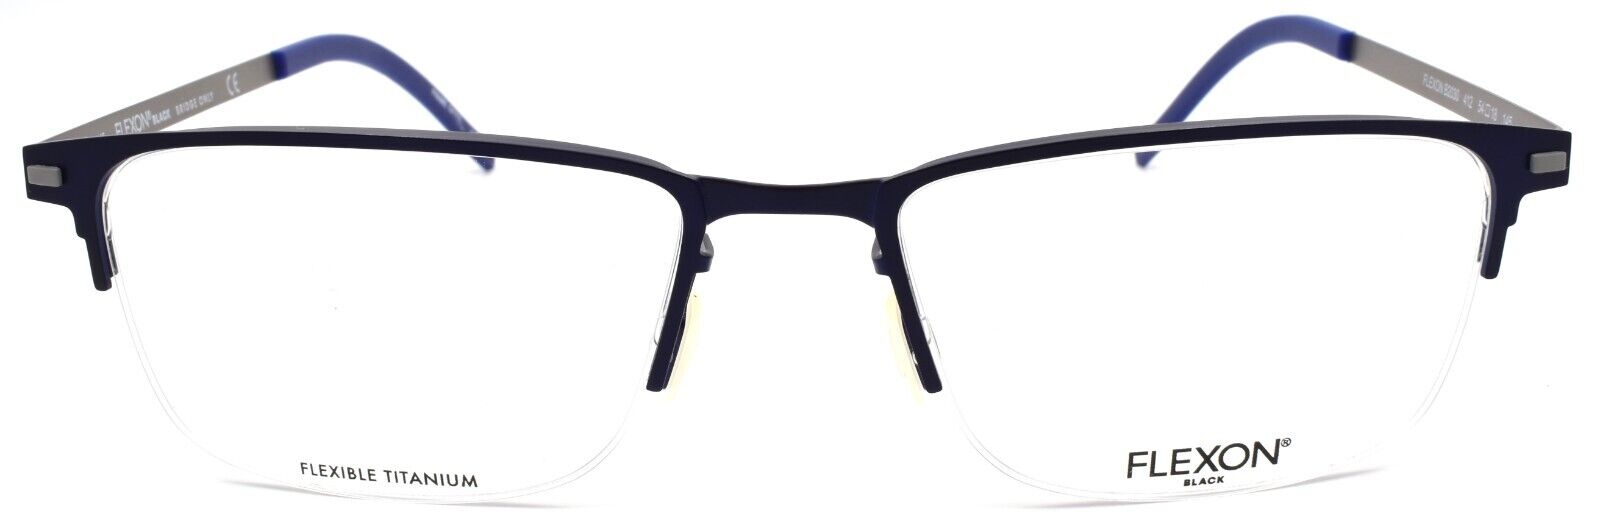 2-Flexon B2030 412 Men's Eyeglasses Navy Half-rim 54-18-145 Flexible Titanium-883900204583-IKSpecs